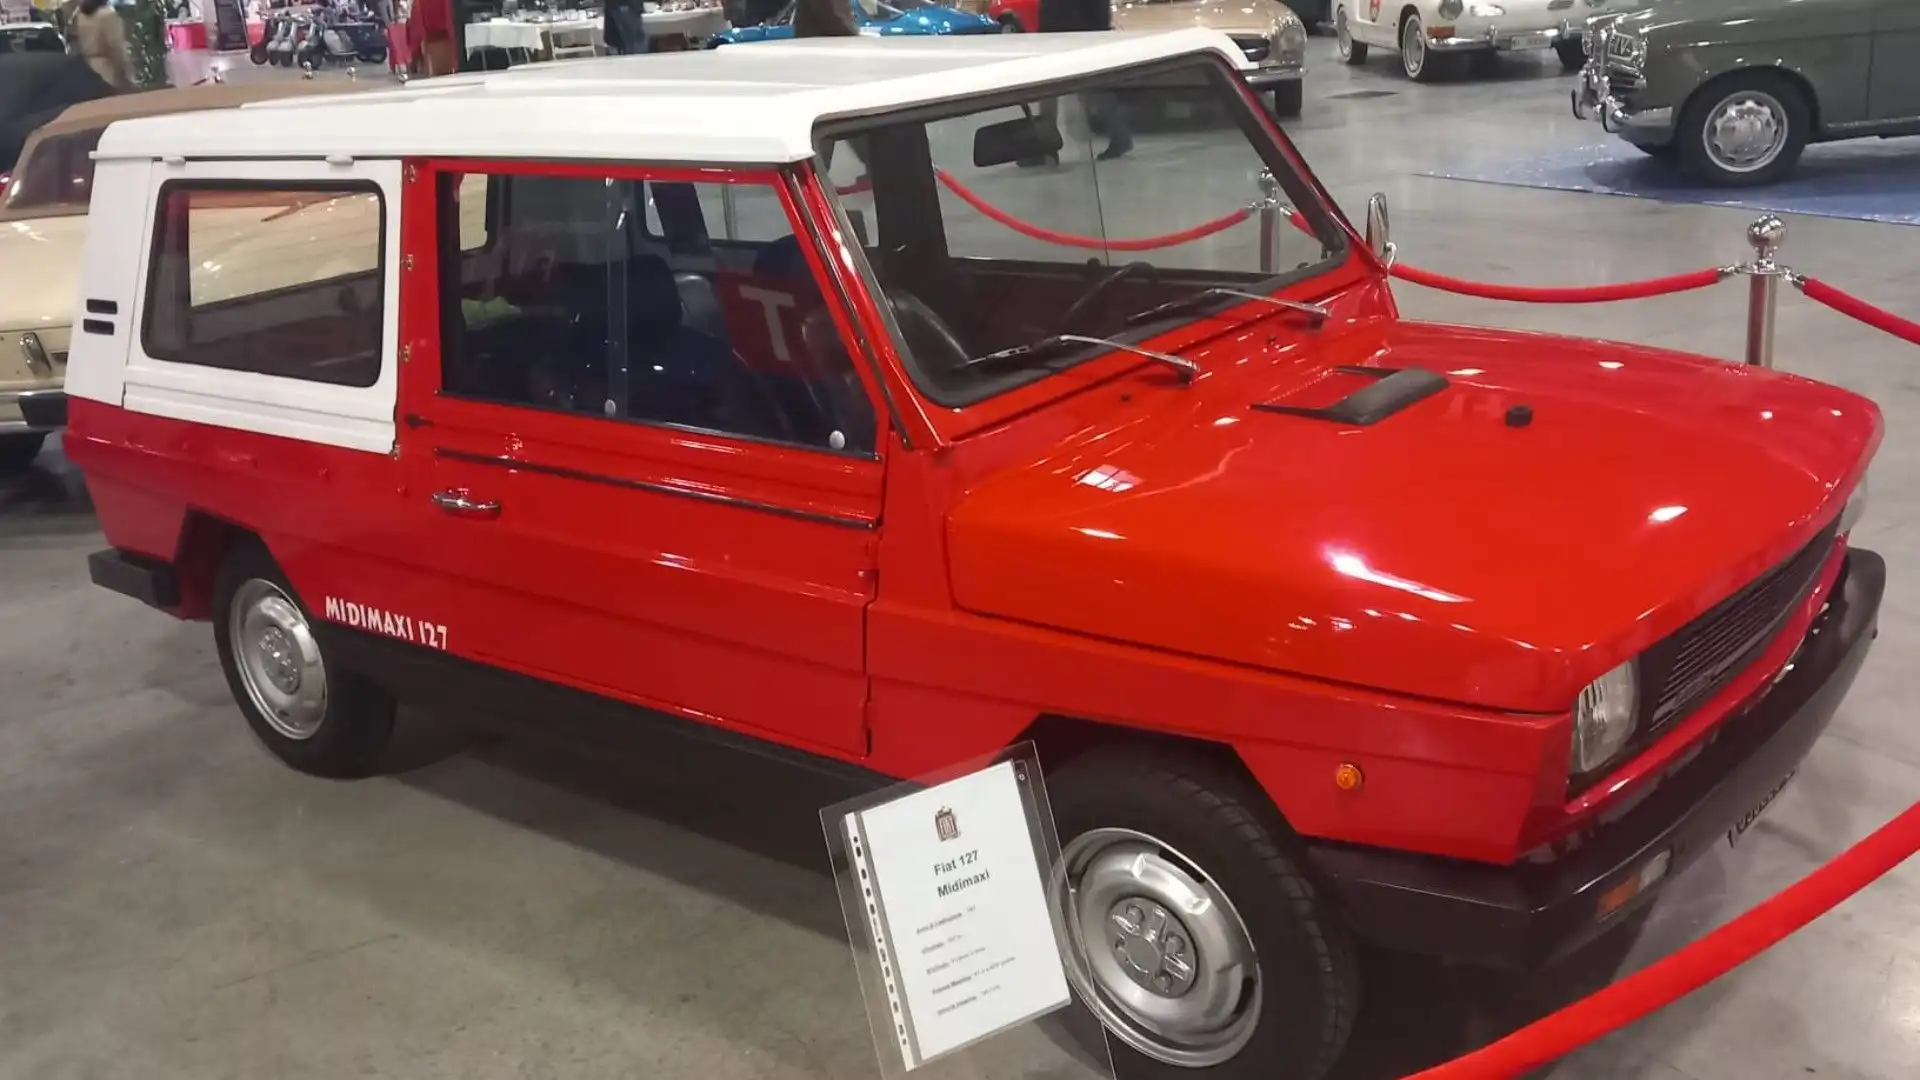 La Moretti Midimaxi ha adottato lo stesso frontale della Fiat 127